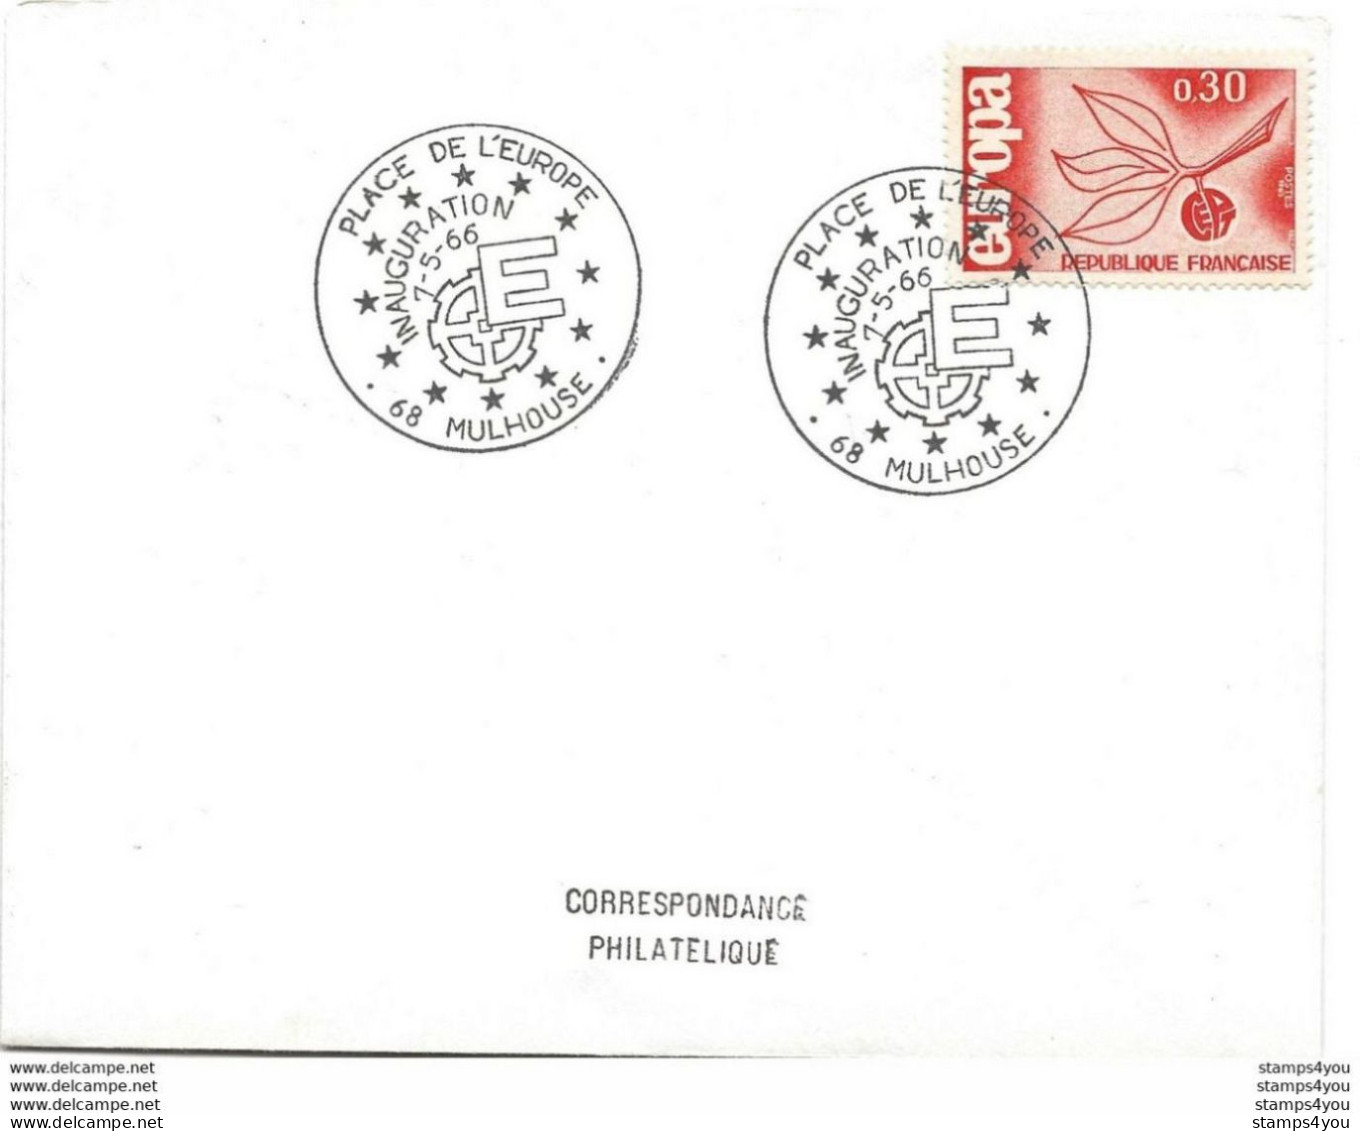 194 - 28 - Enveloppe Avec Timbre Europa Et Oblit Spéciale MUlhouse Inauguration Place De L'Europe 1966 - Europese Gedachte